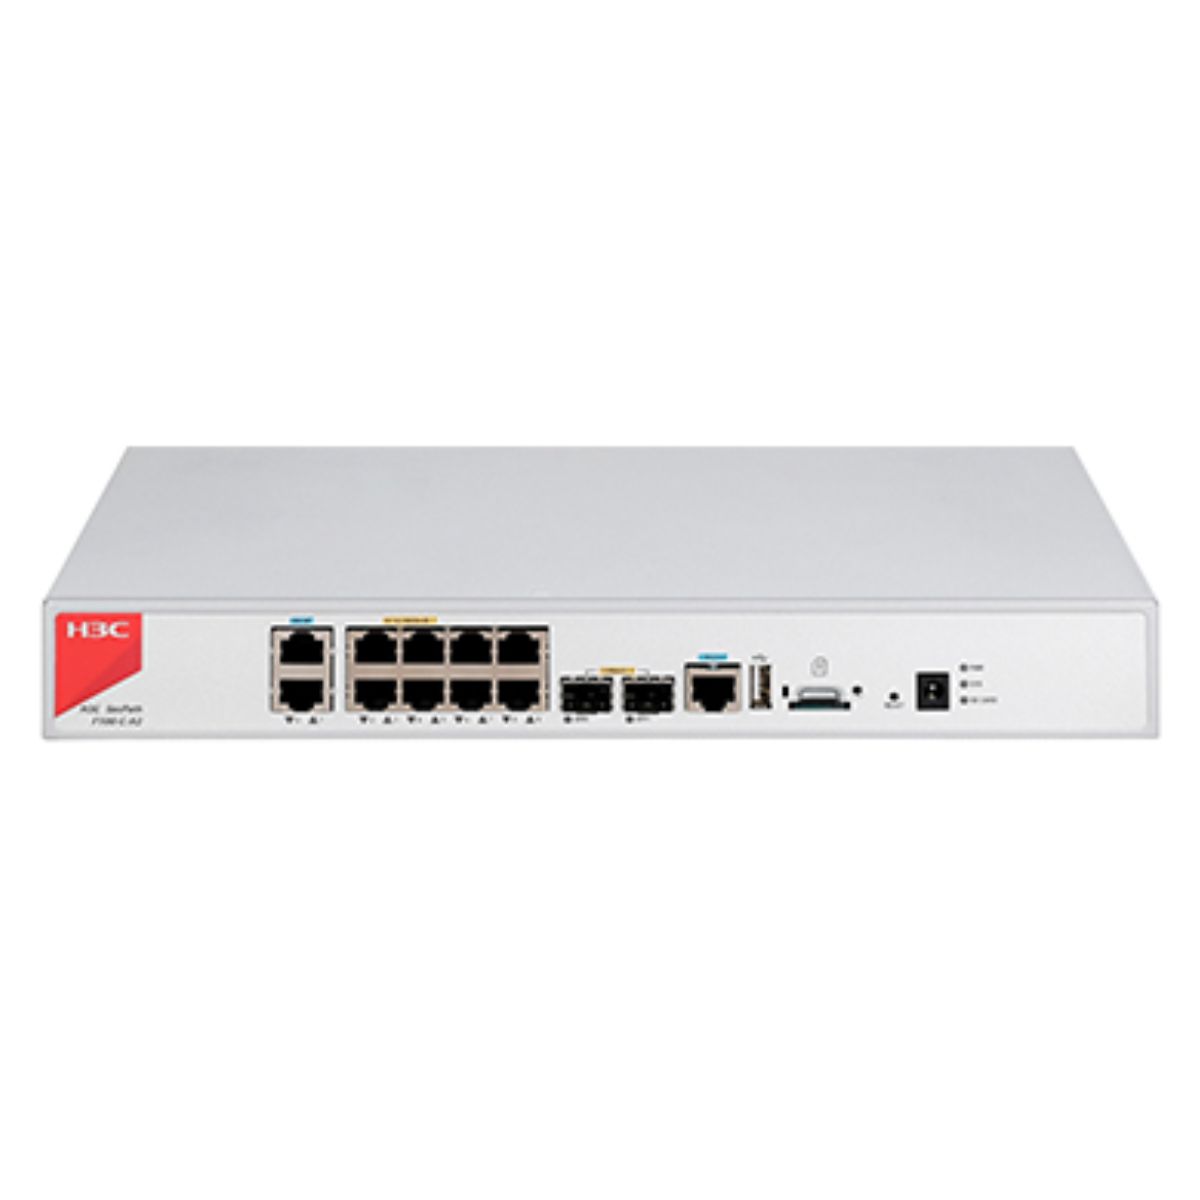 Thiết bị tường lửa Firewall H3C F100-C-A2 10 cổng GE và 2 cổng SFP, hỗ trợ TF Card 500Gb, tích hợp SSL VPN